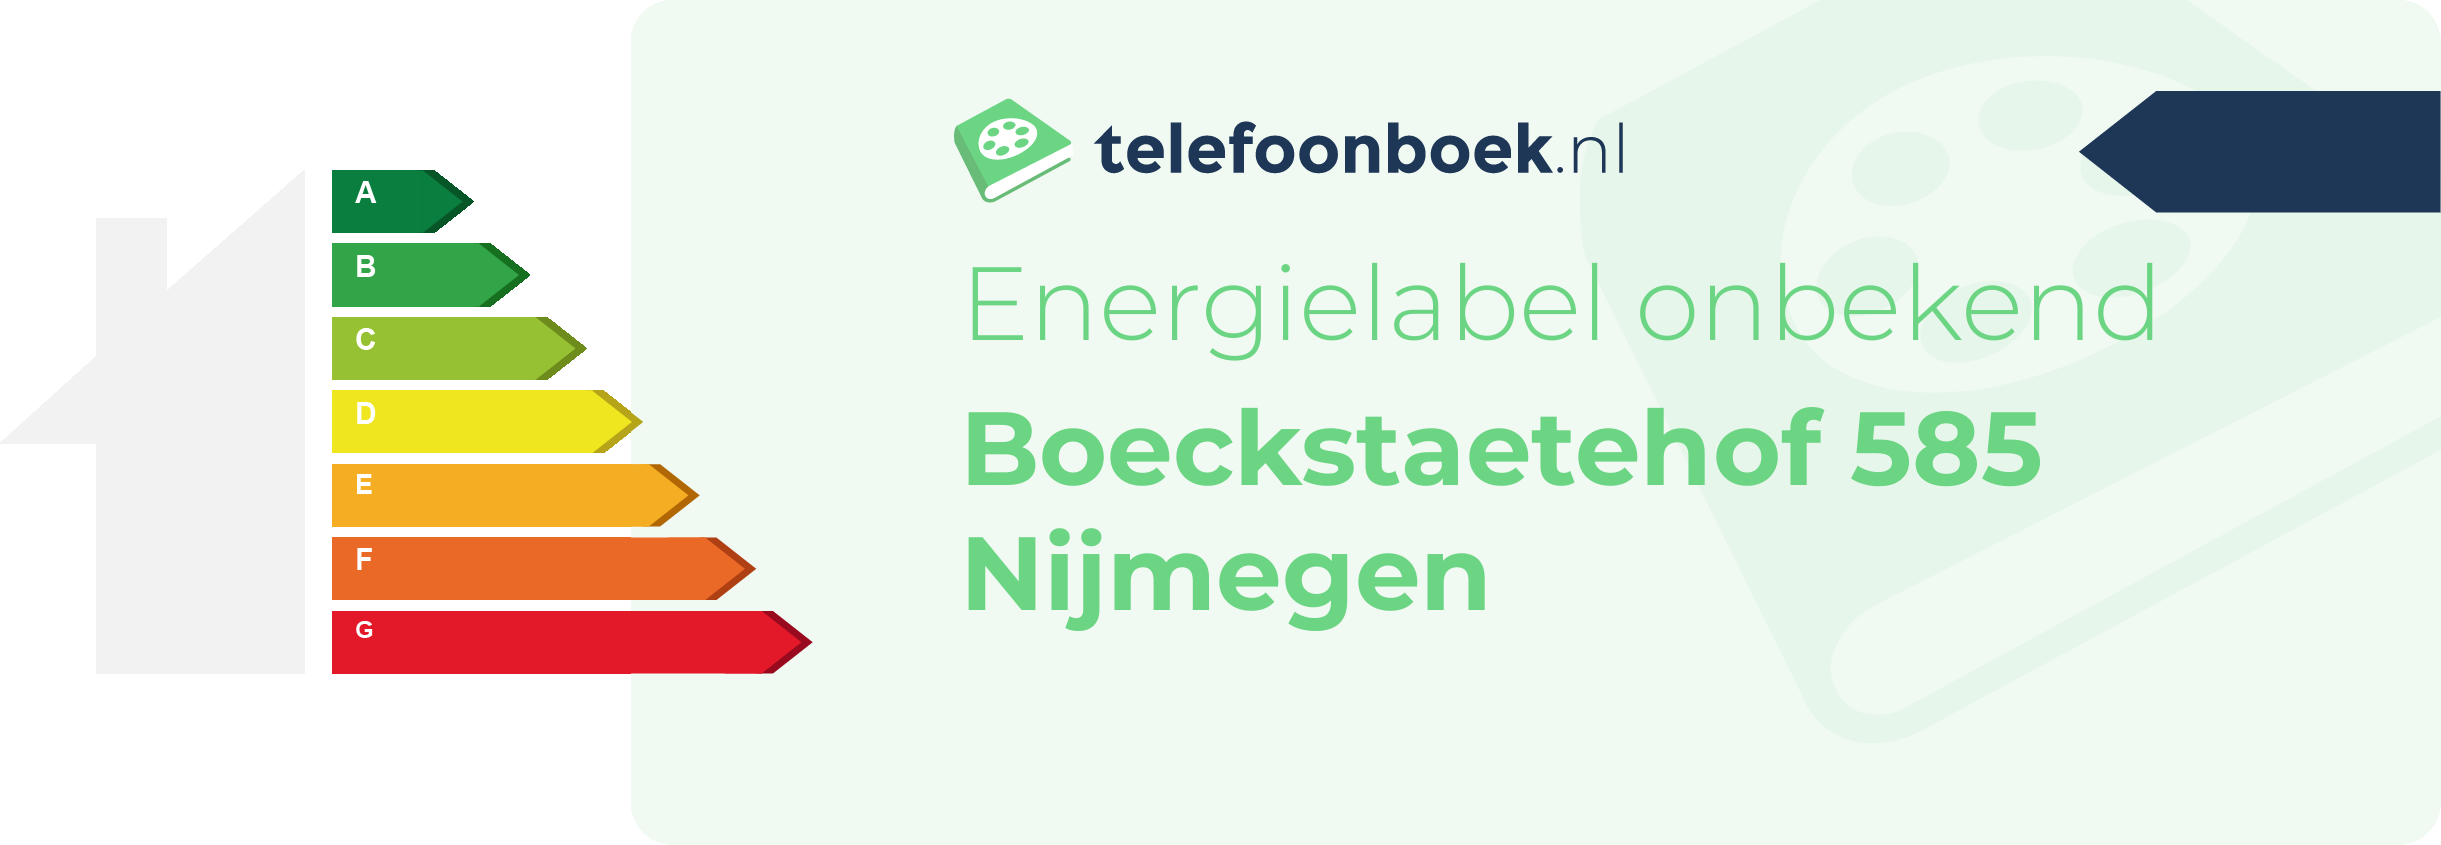 Energielabel Boeckstaetehof 585 Nijmegen